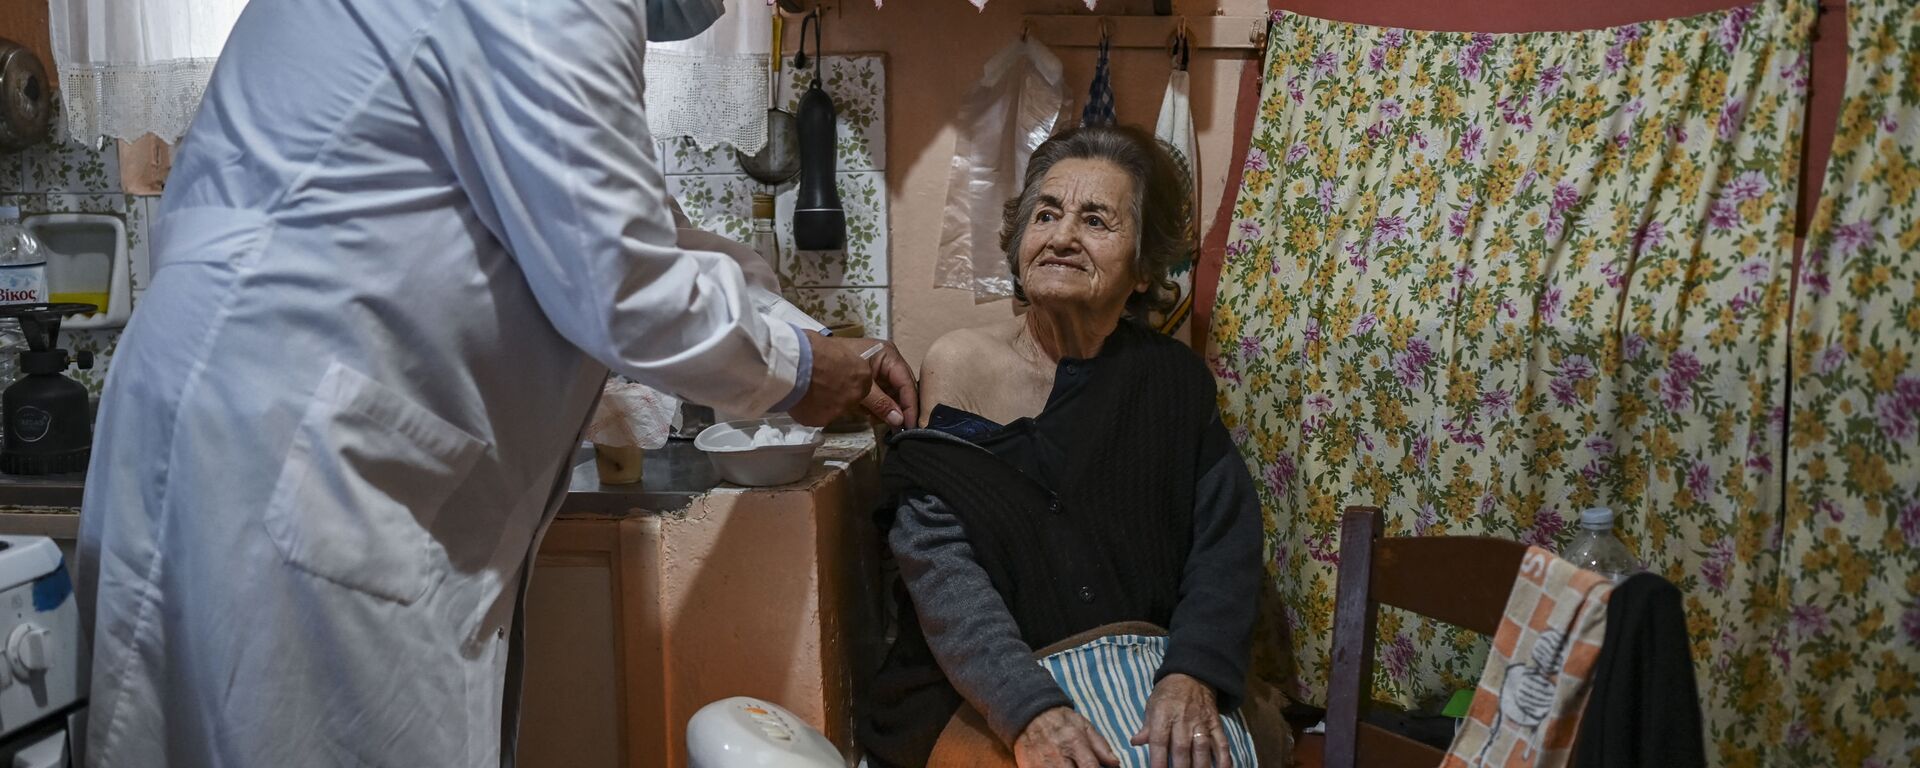 Доктор Анаргирос Мариолис вакцинирует пожилую женщину от Covid-19 на острове Элафониссос - Sputnik Латвия, 1920, 17.06.2021